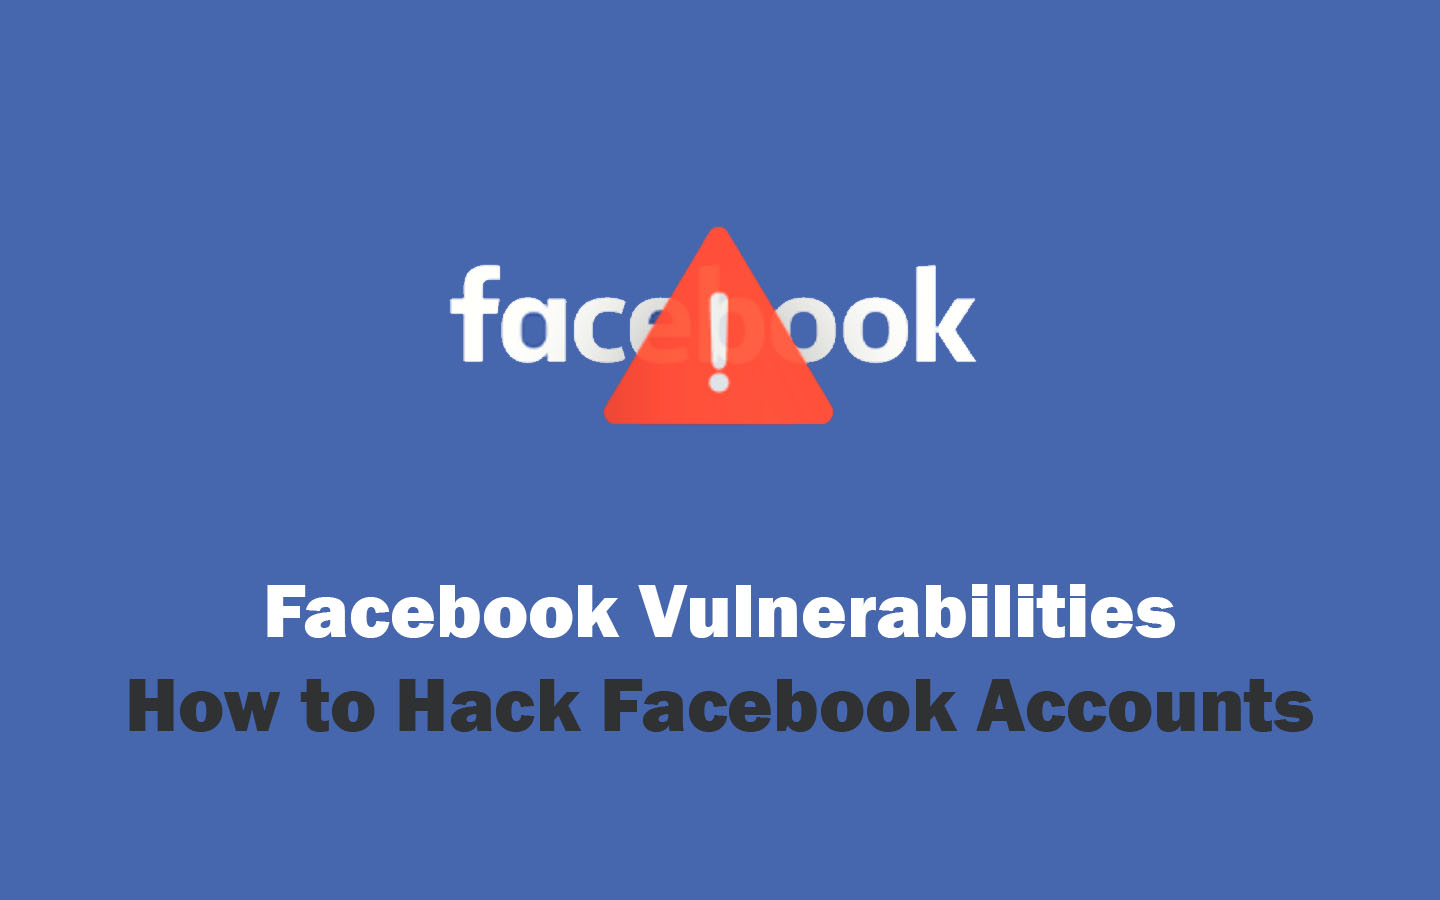 5 Common Facebook Vulnerabilities - How to Hack Facebook Accounts